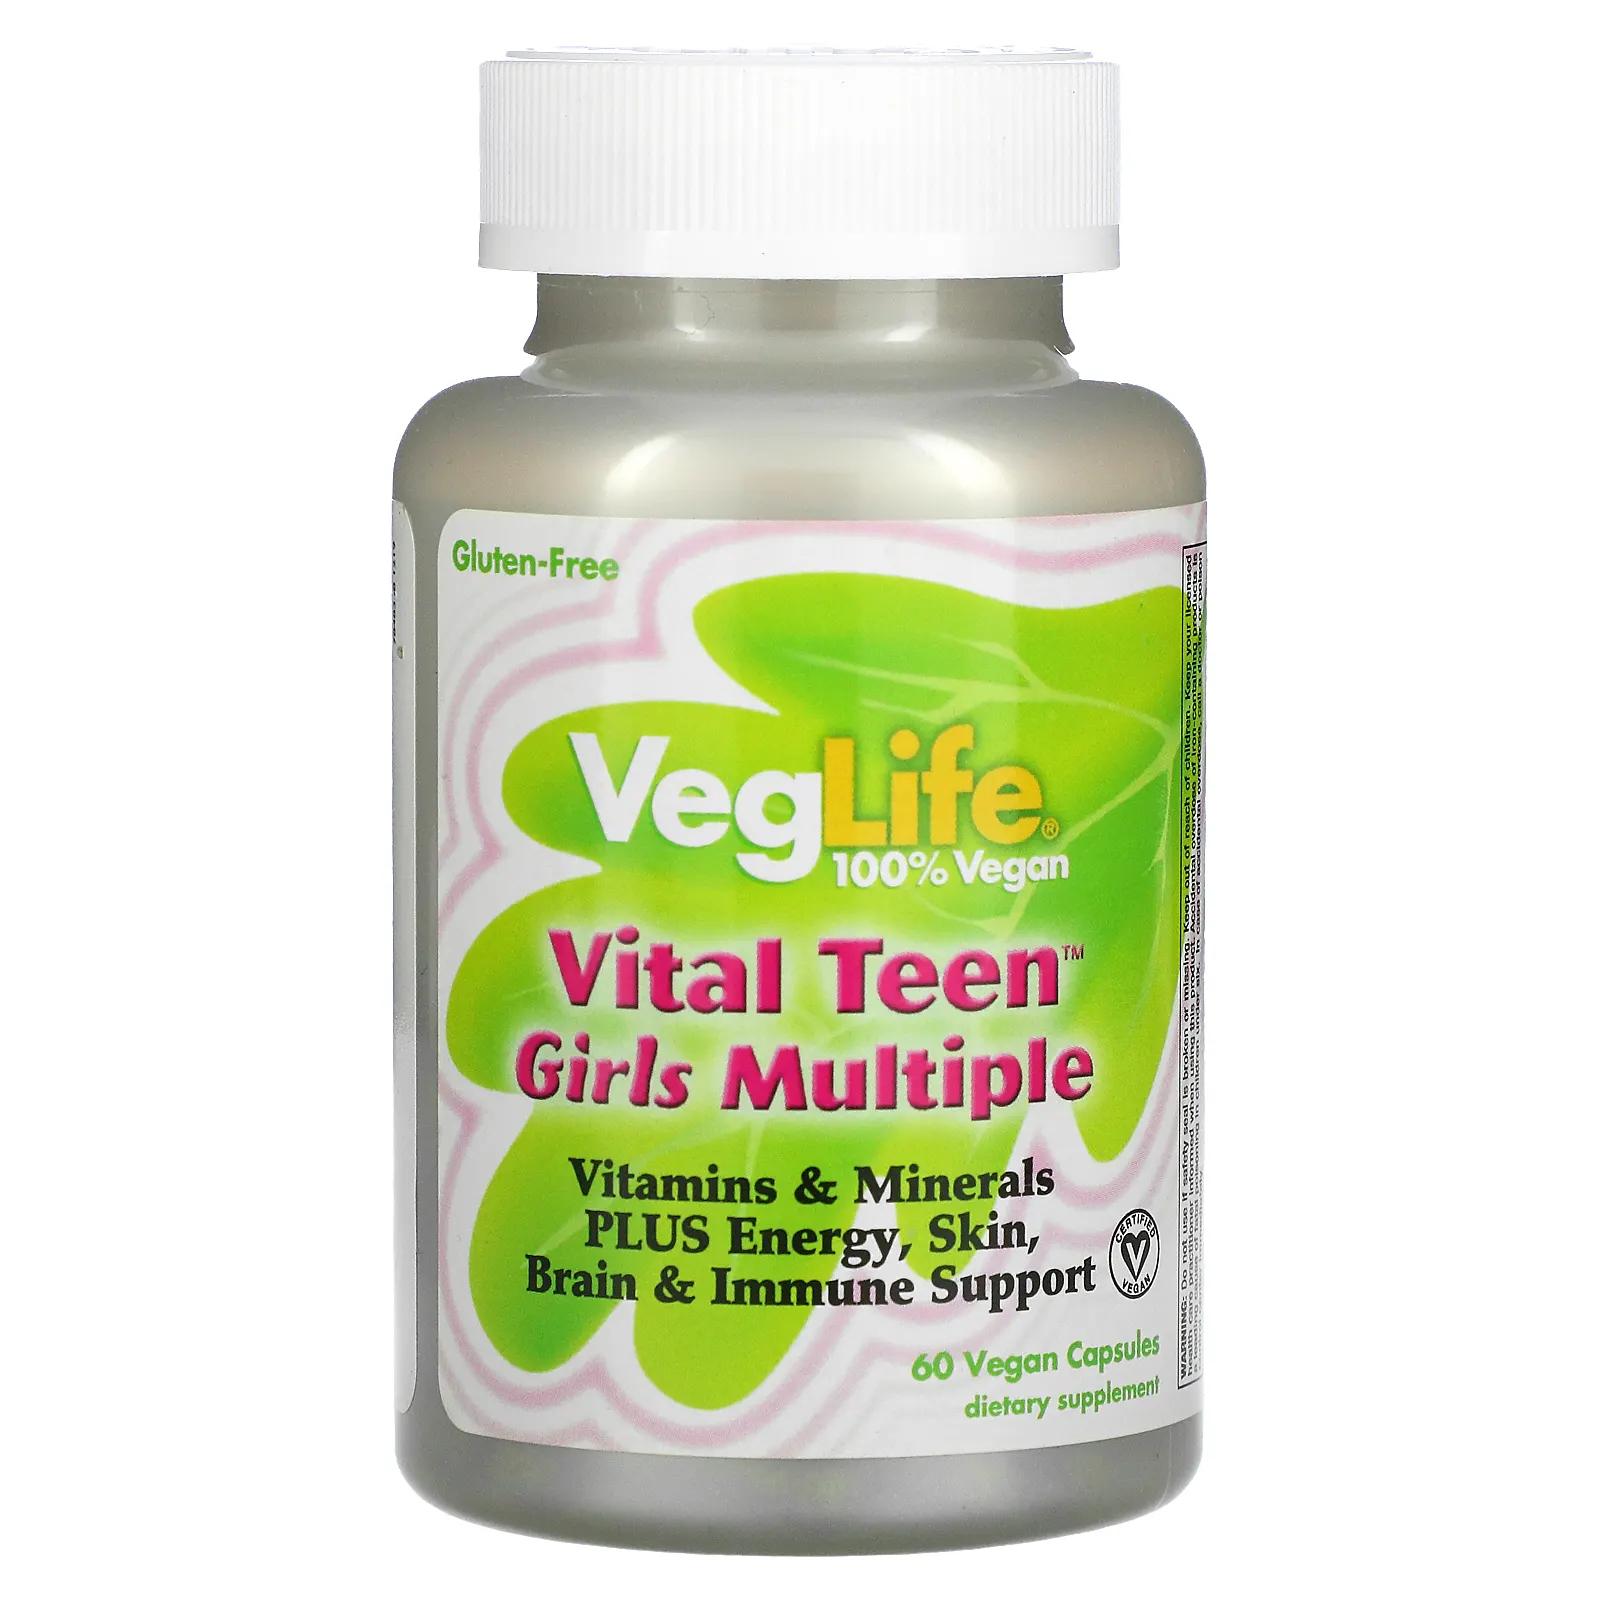 VegLife Vital Teen витаминный комплекс для девочек 60 вегетарианских капсул veglife vital teen витаминный комплекс для мальчиков 60 растительных капсул